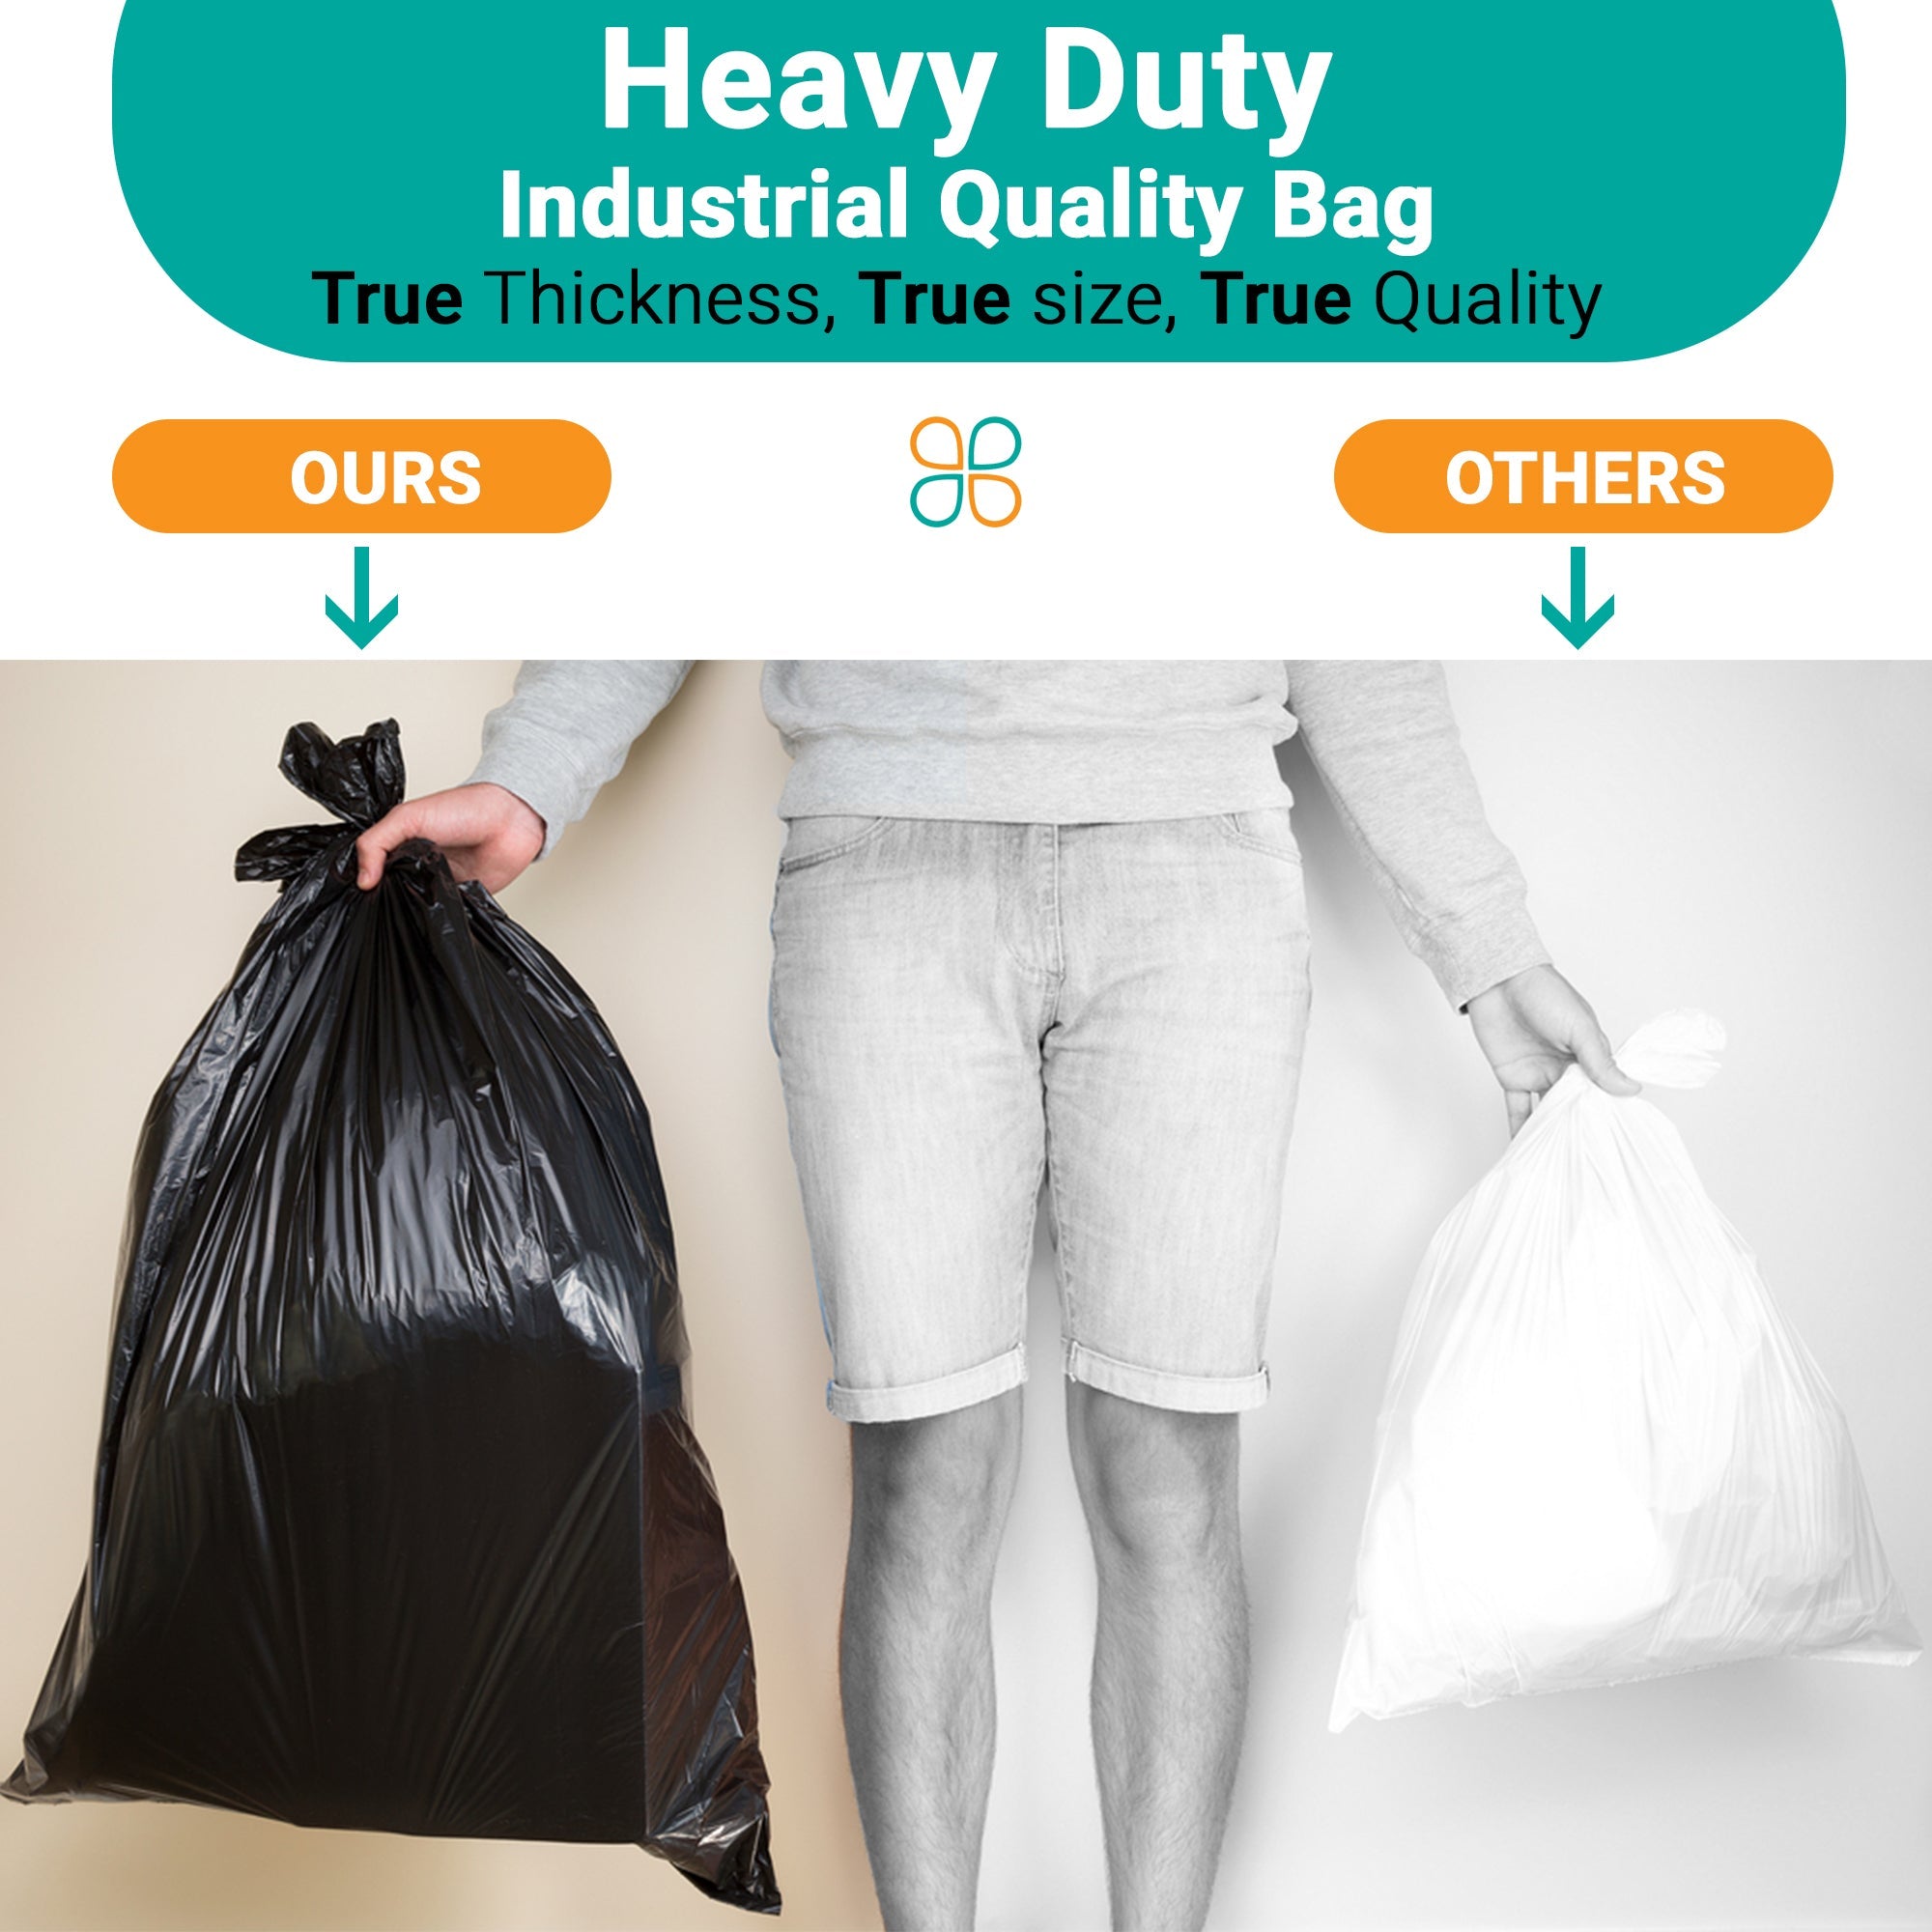 Garbage bags sizes -